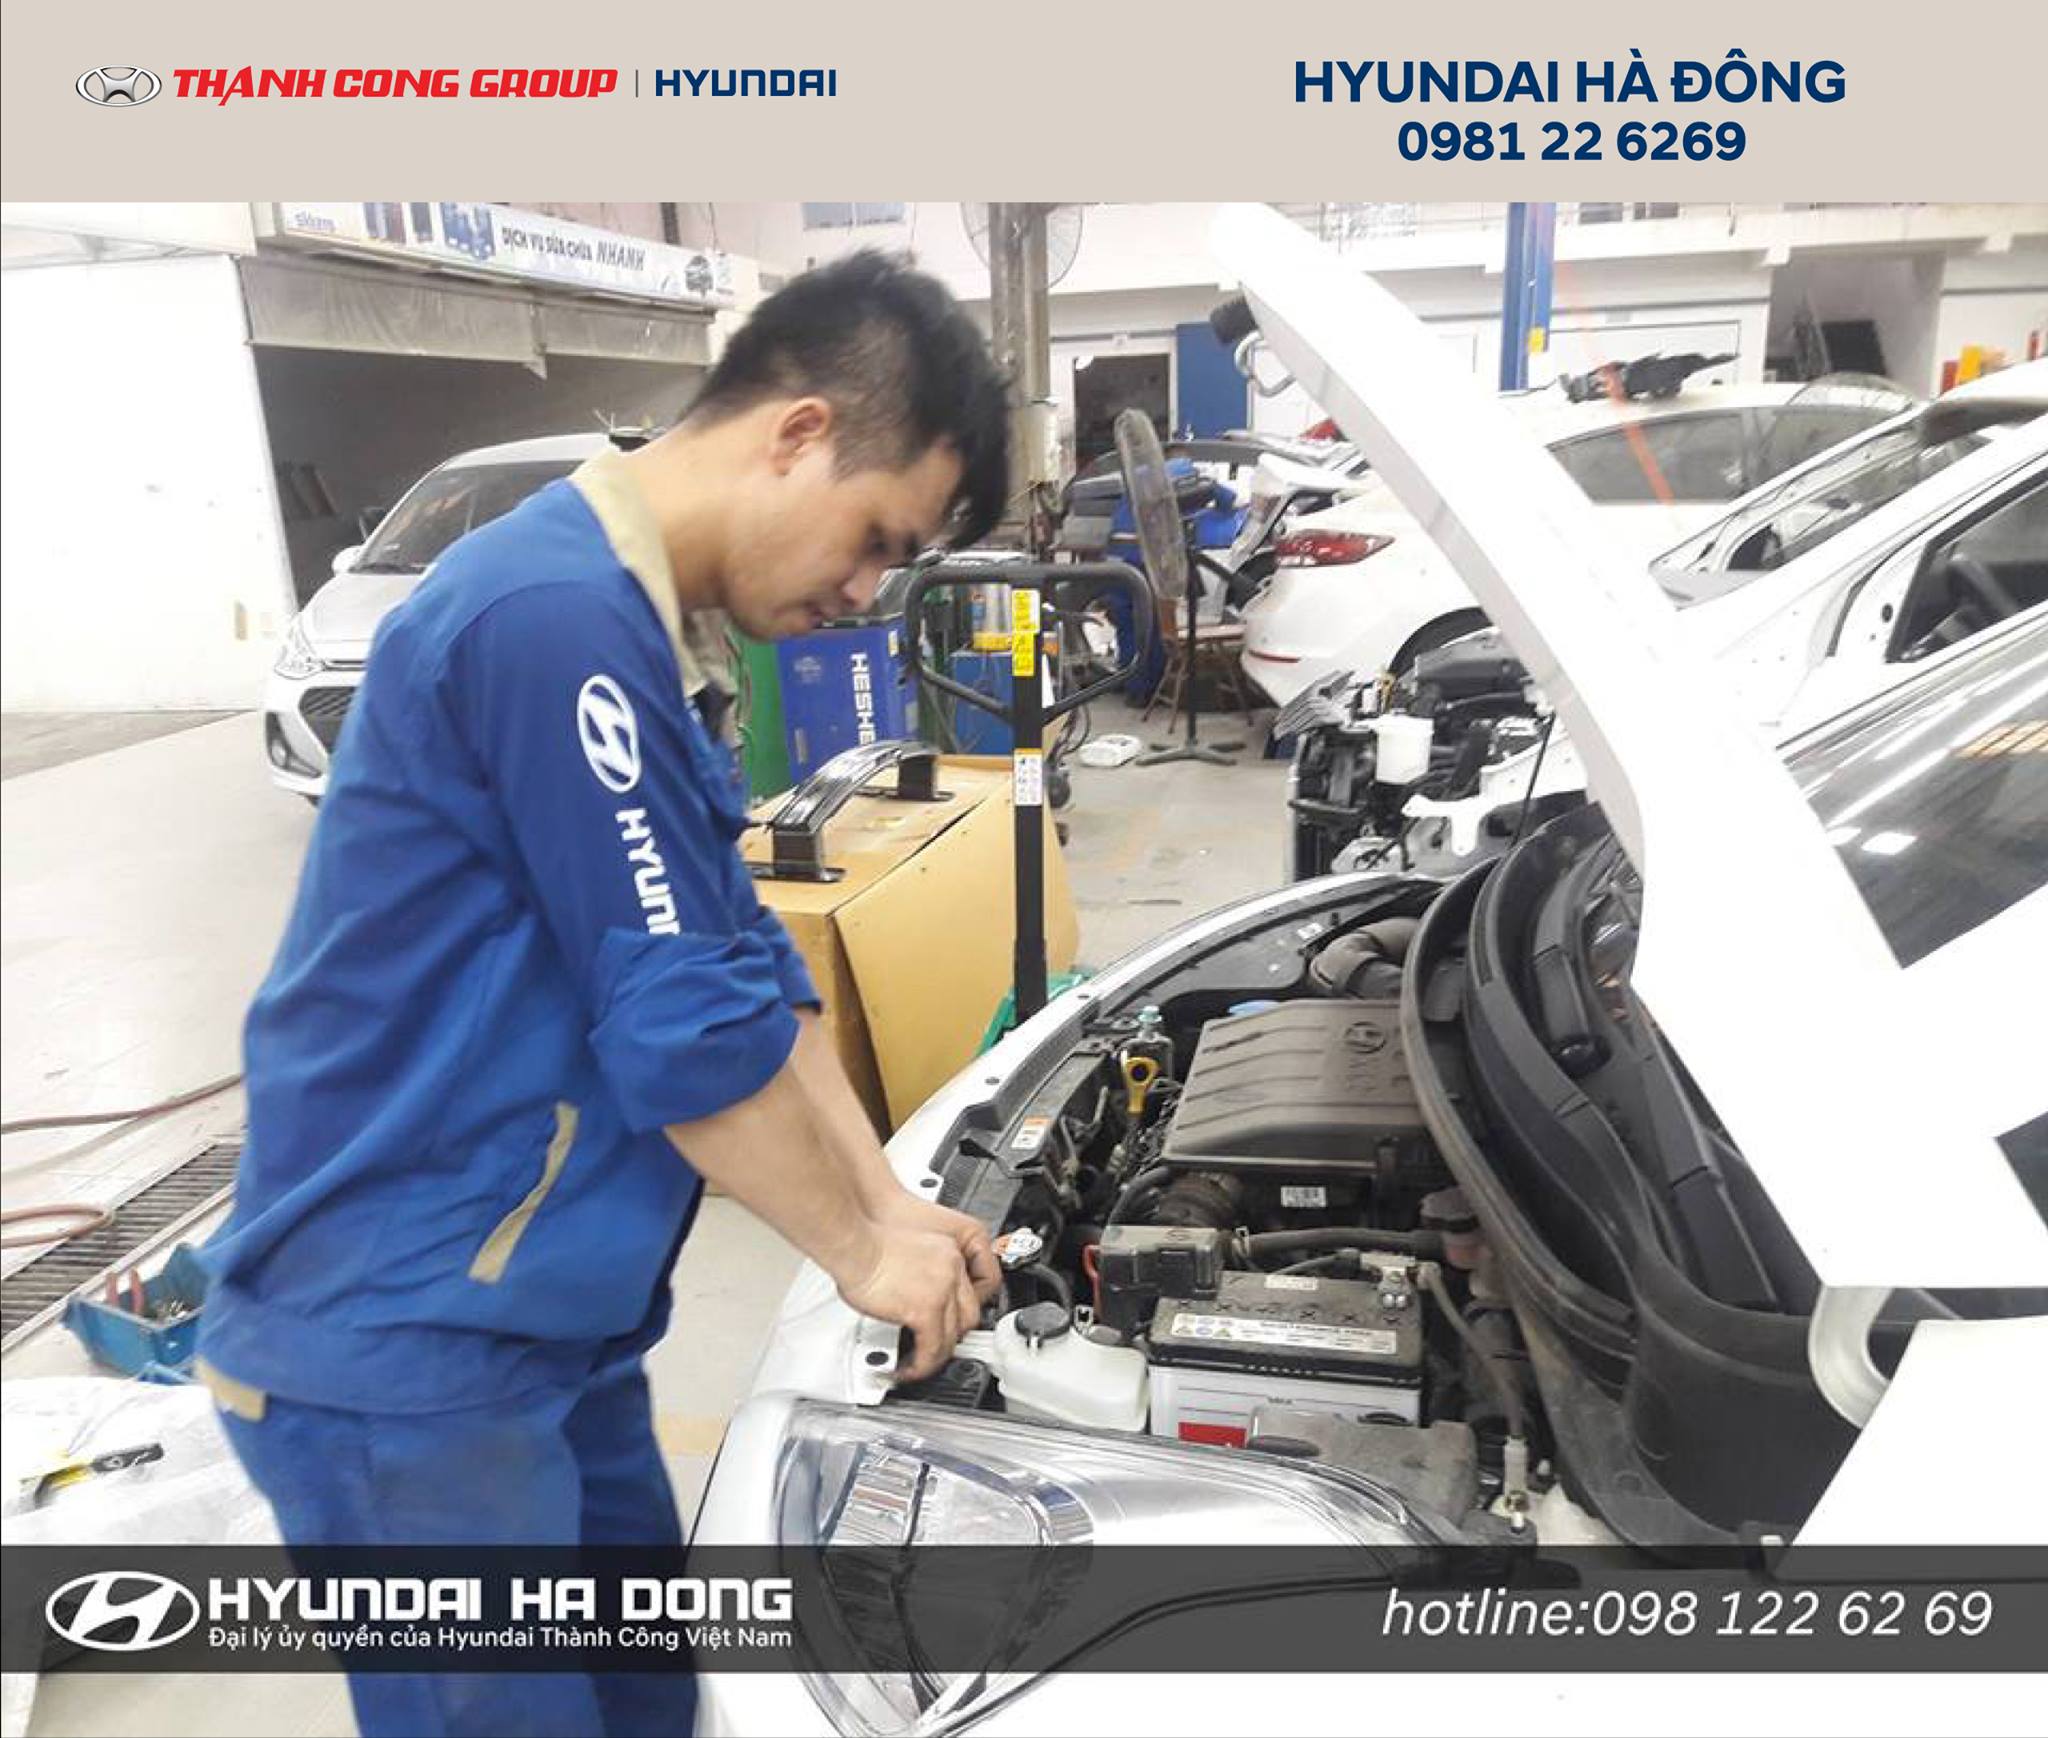 Hyundai Hà Đông ảnh 2